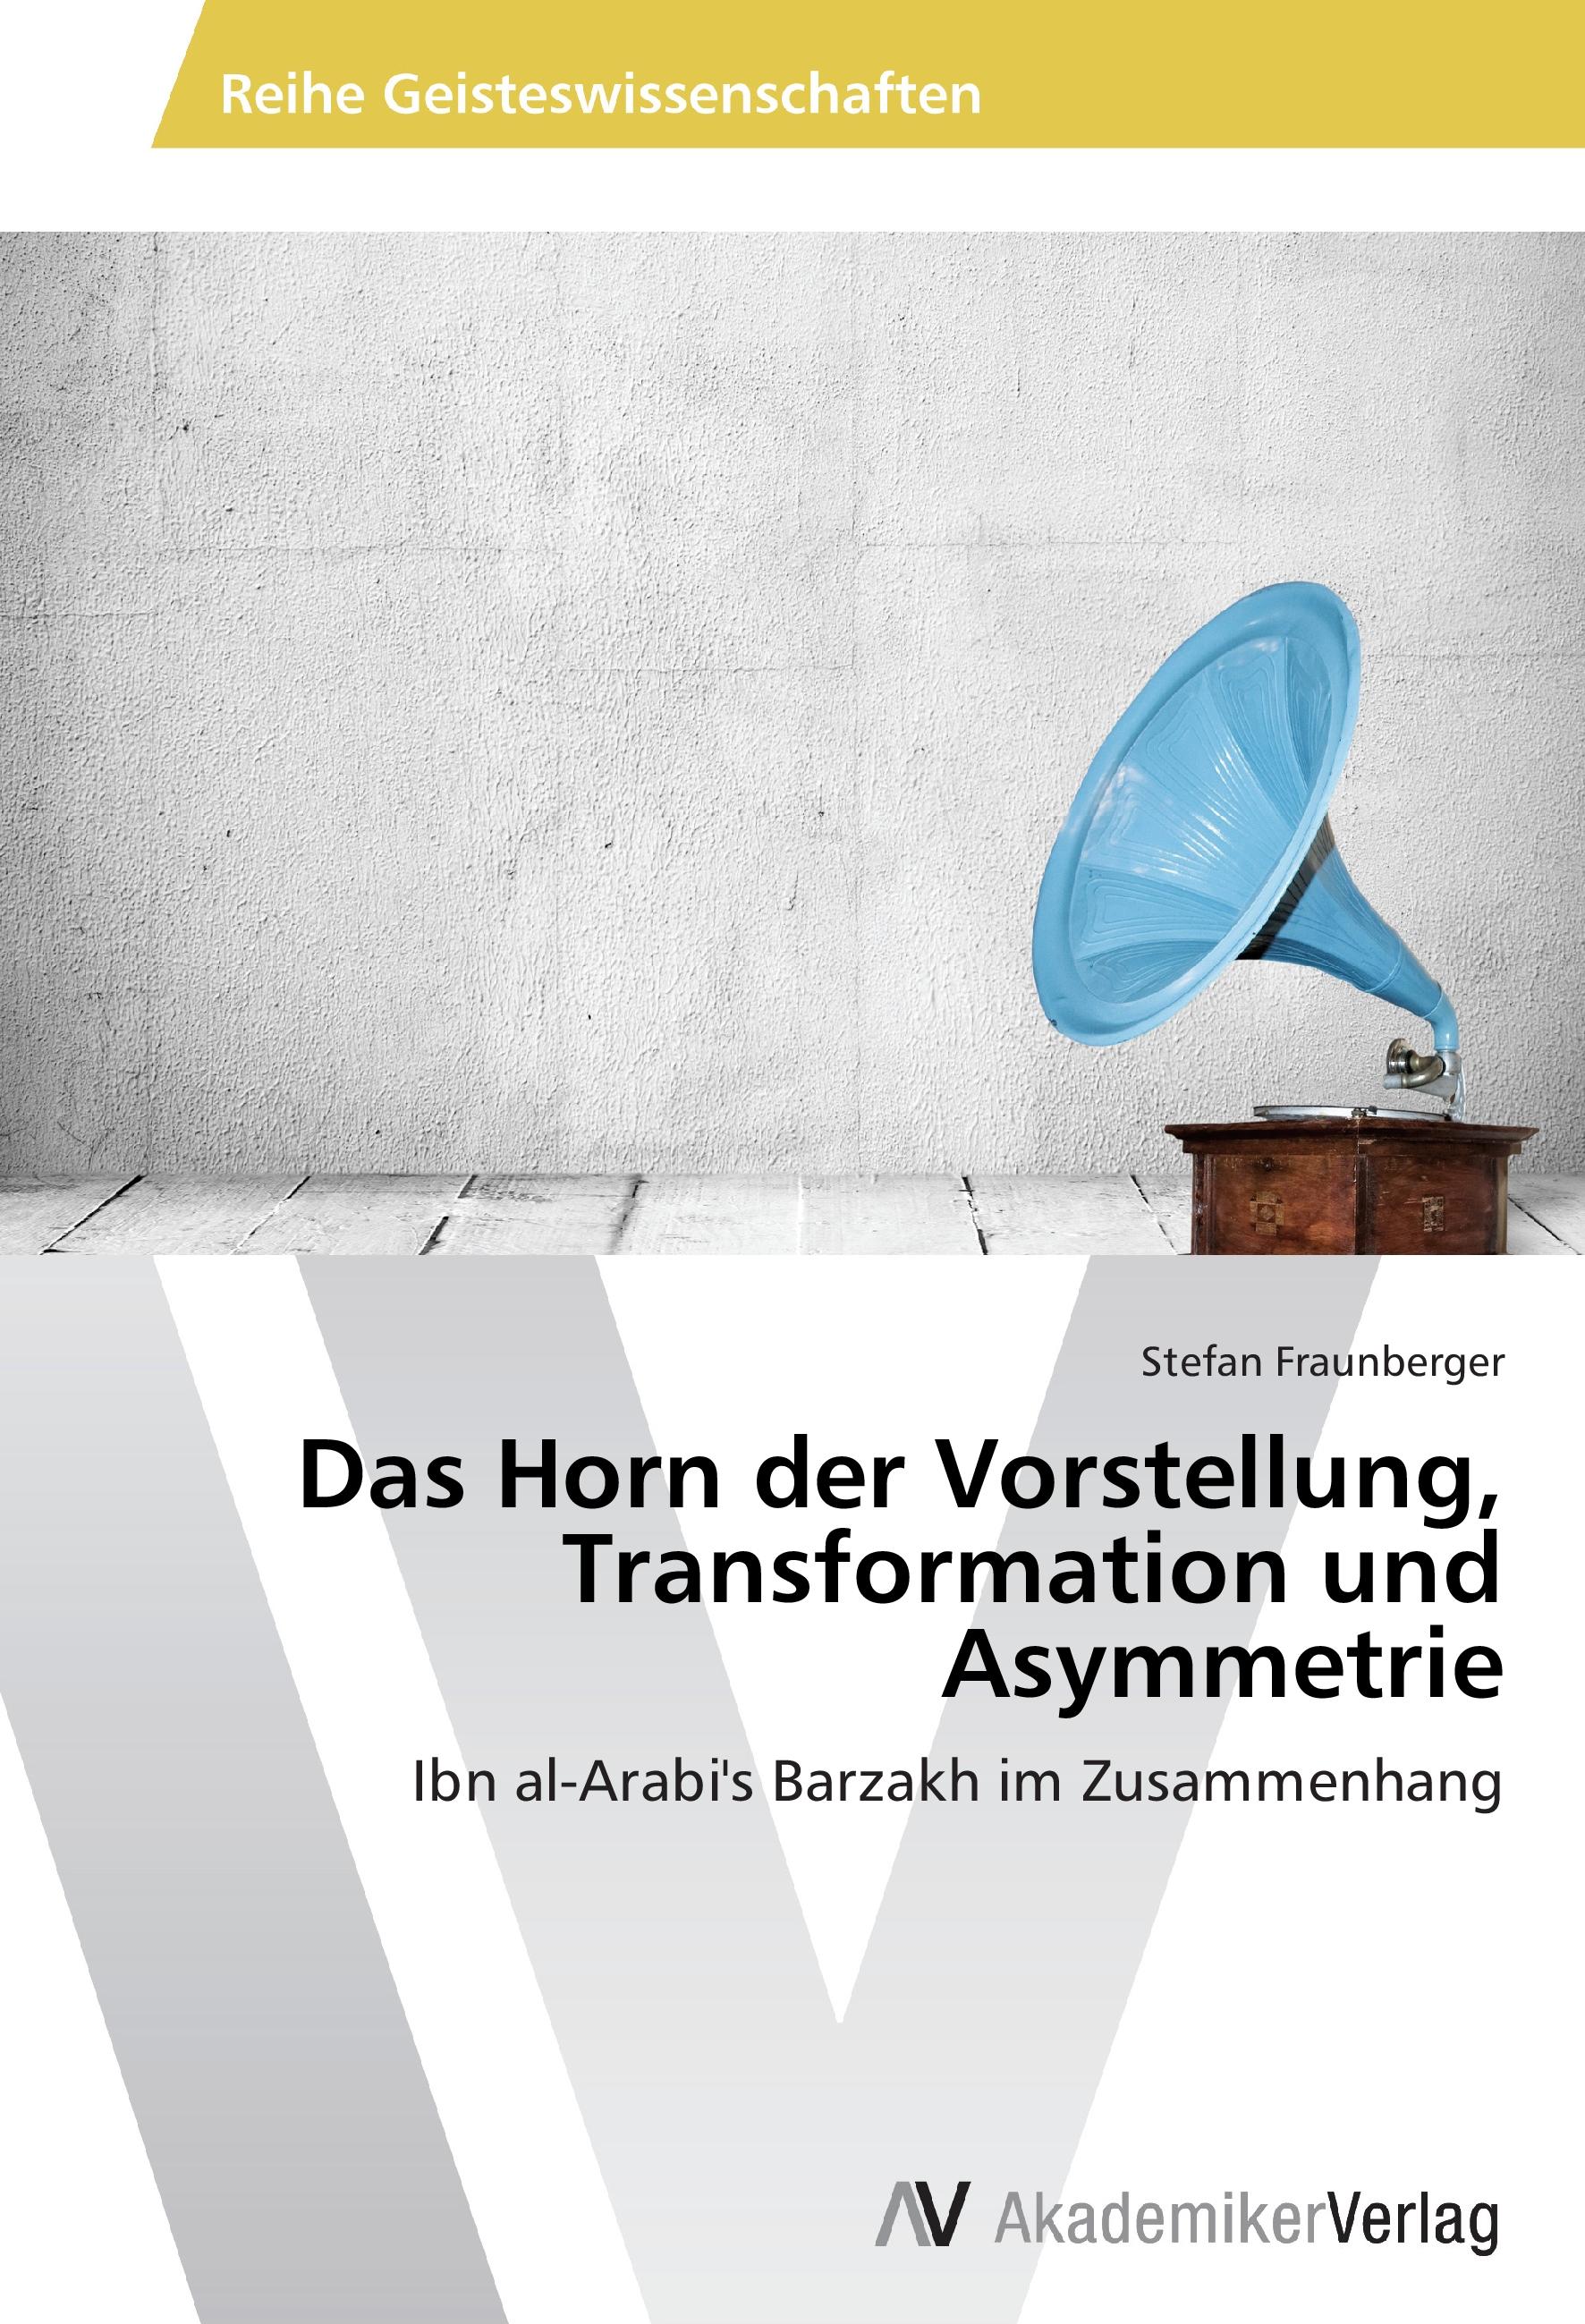 Das Horn der Vorstellung, Transformation und Asymmetrie - Stefan Fraunberger